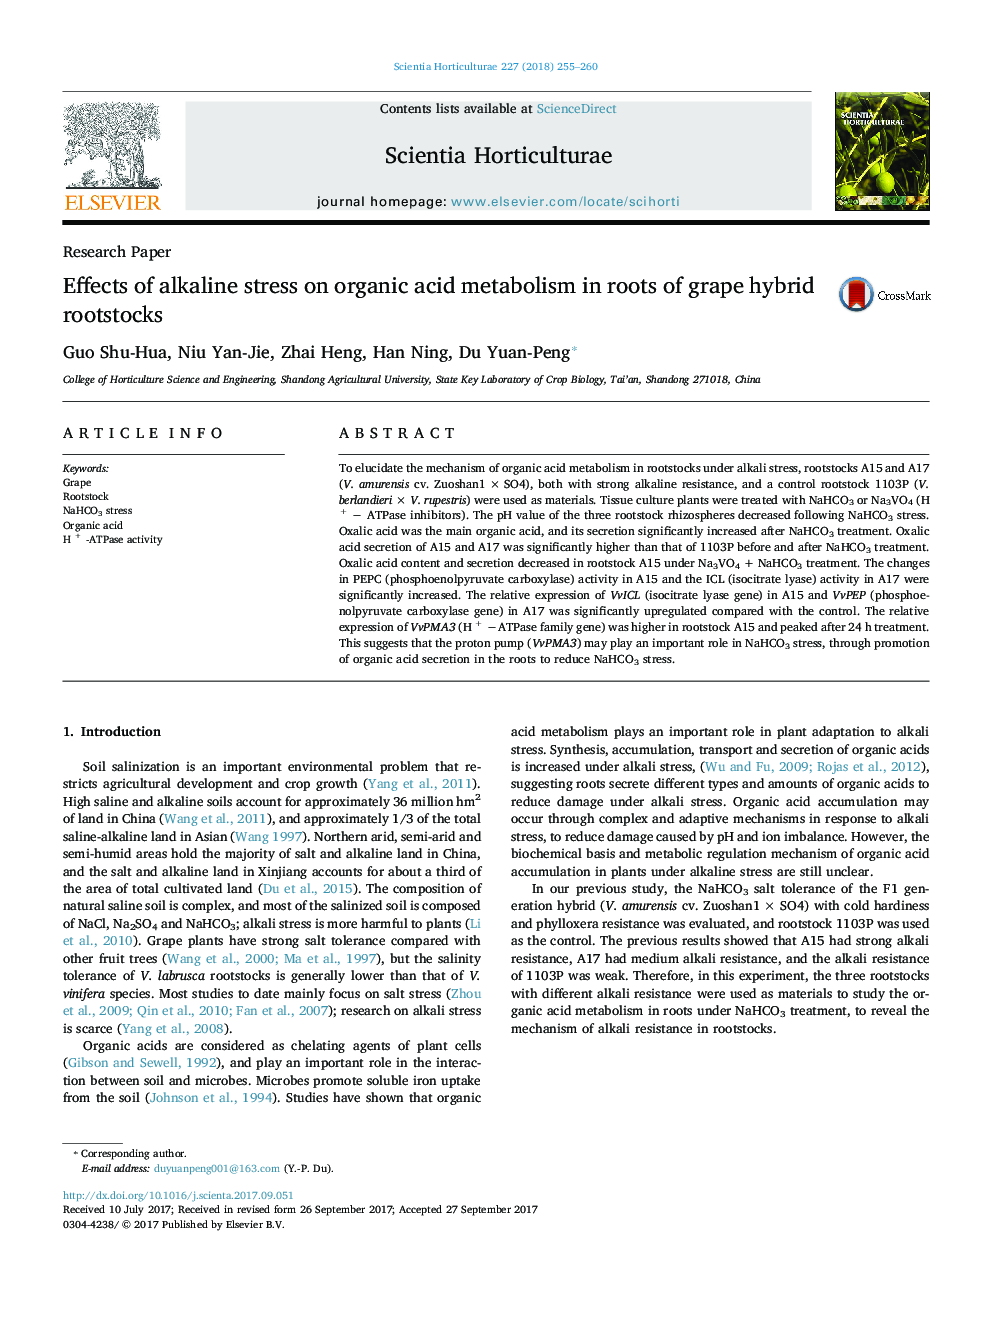 مقاله پژوهشی اثرات استرس قلیایی بر متابولیسم اسید آلی در ریشه های پایه های ترکیبی انگور